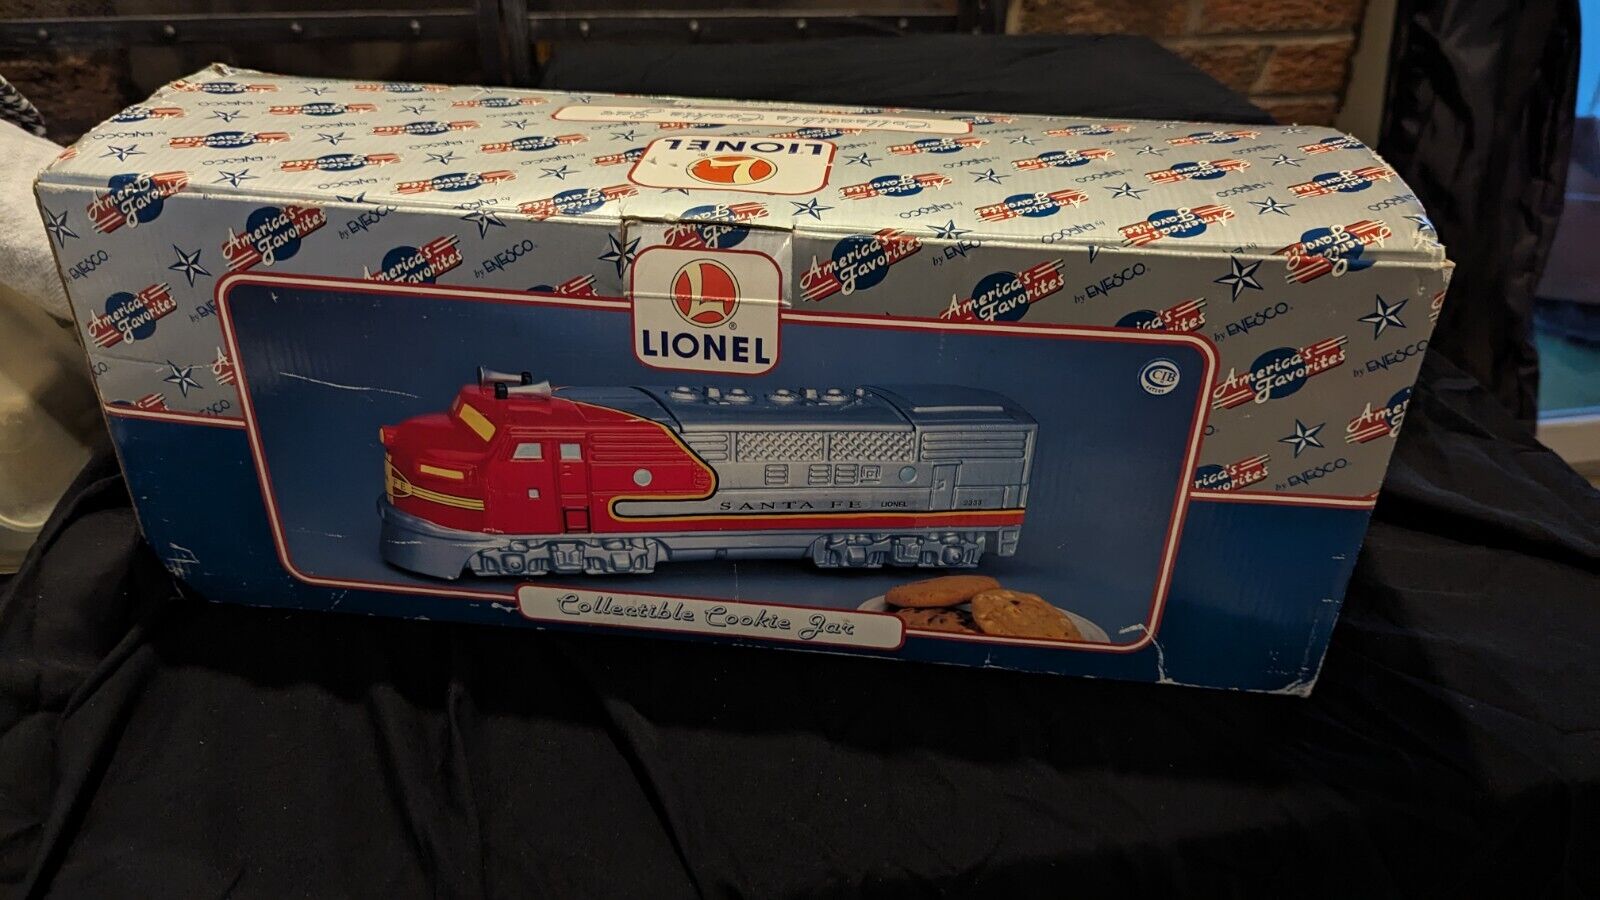 Lionel Santa Fe 2333 Locomotive Train Collectible Ceramic Cookie Jar 17” NIB